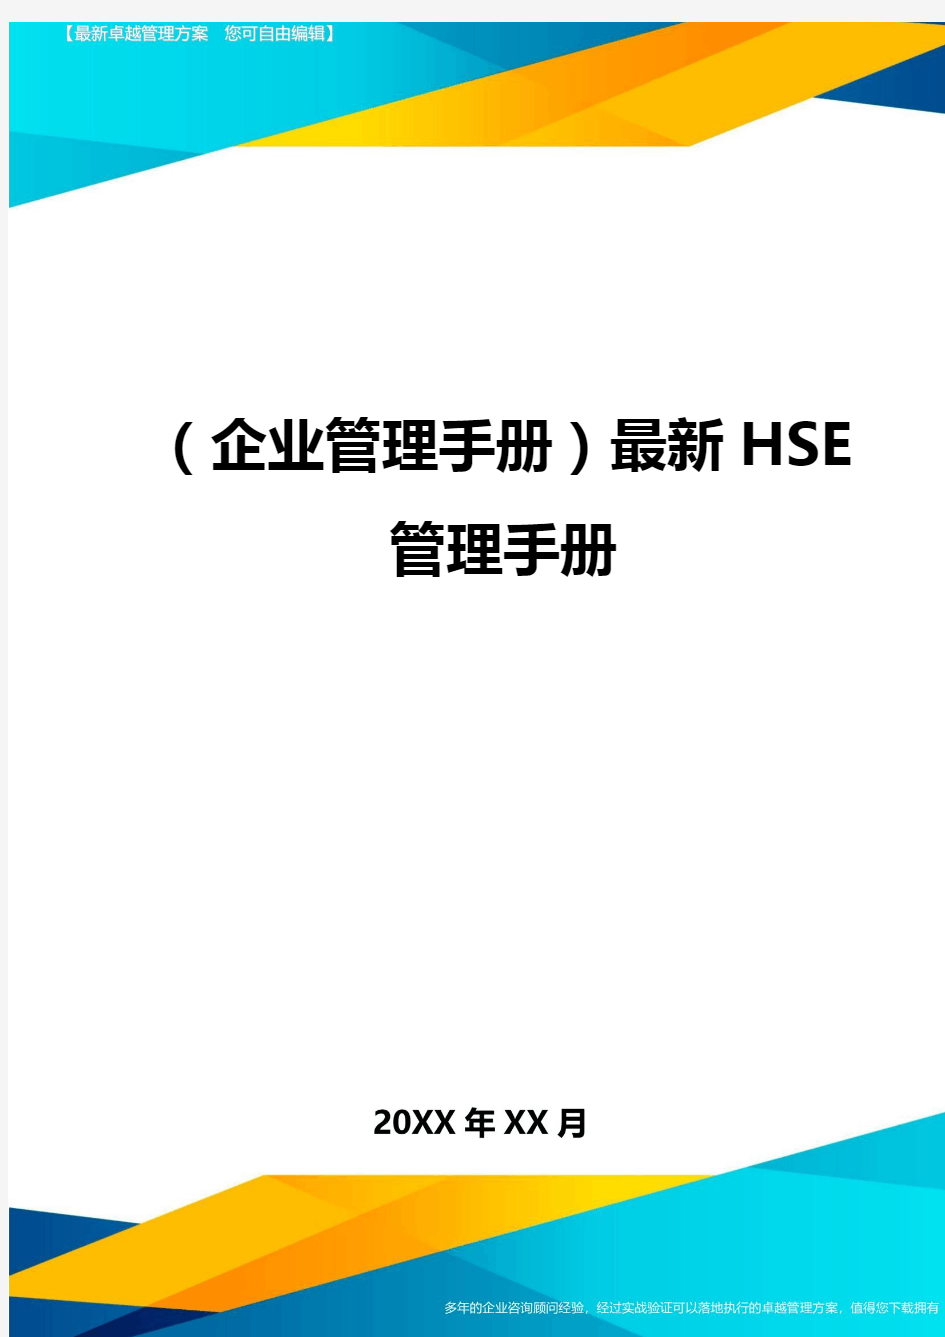 (企业管理手册)最新HSE管理手册最全版